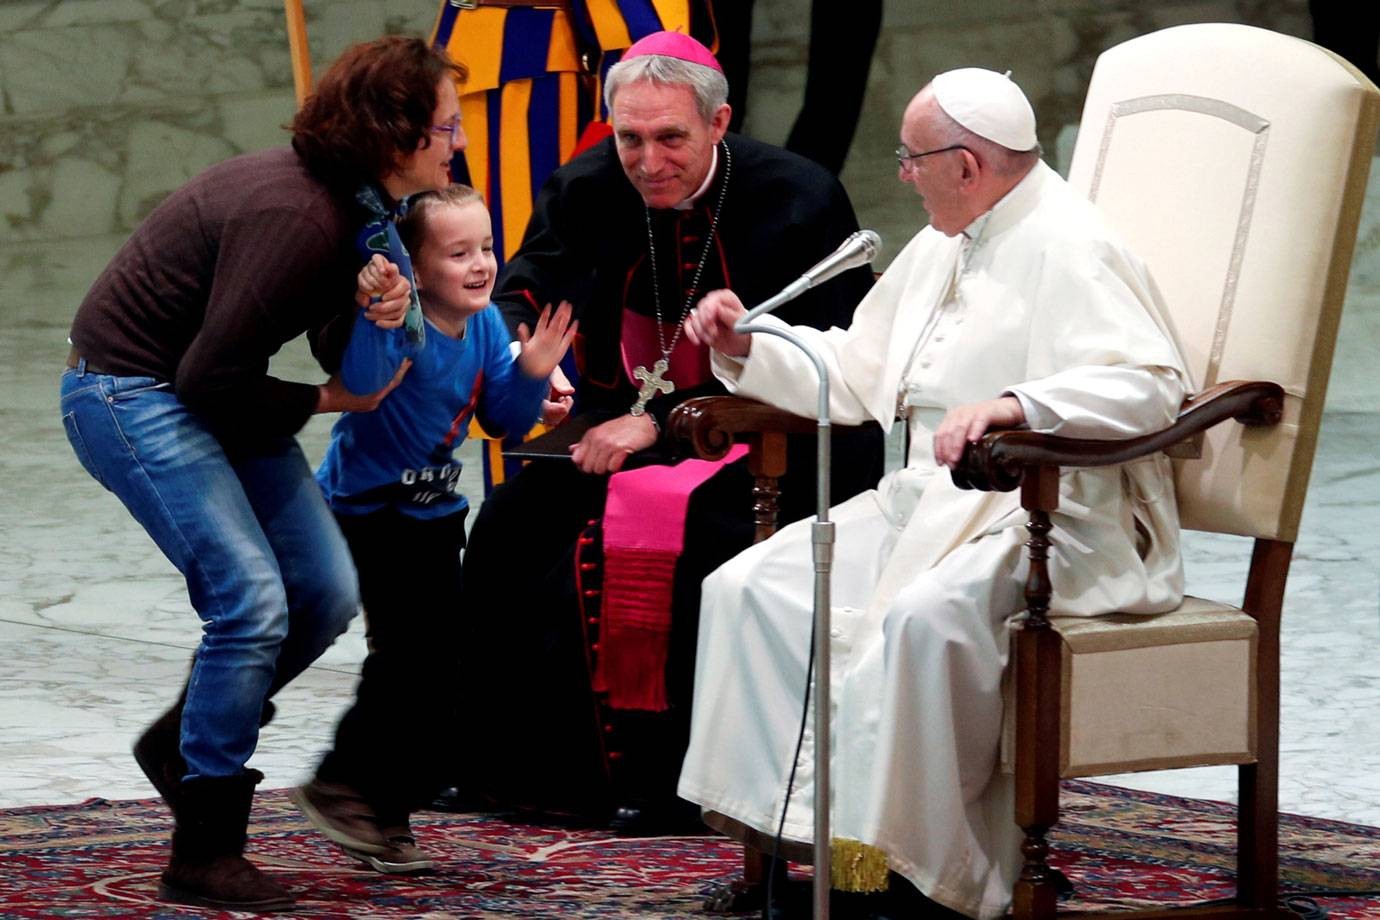 Menino autista sobe no palco para falar com o Papa (Foto: divulgação)